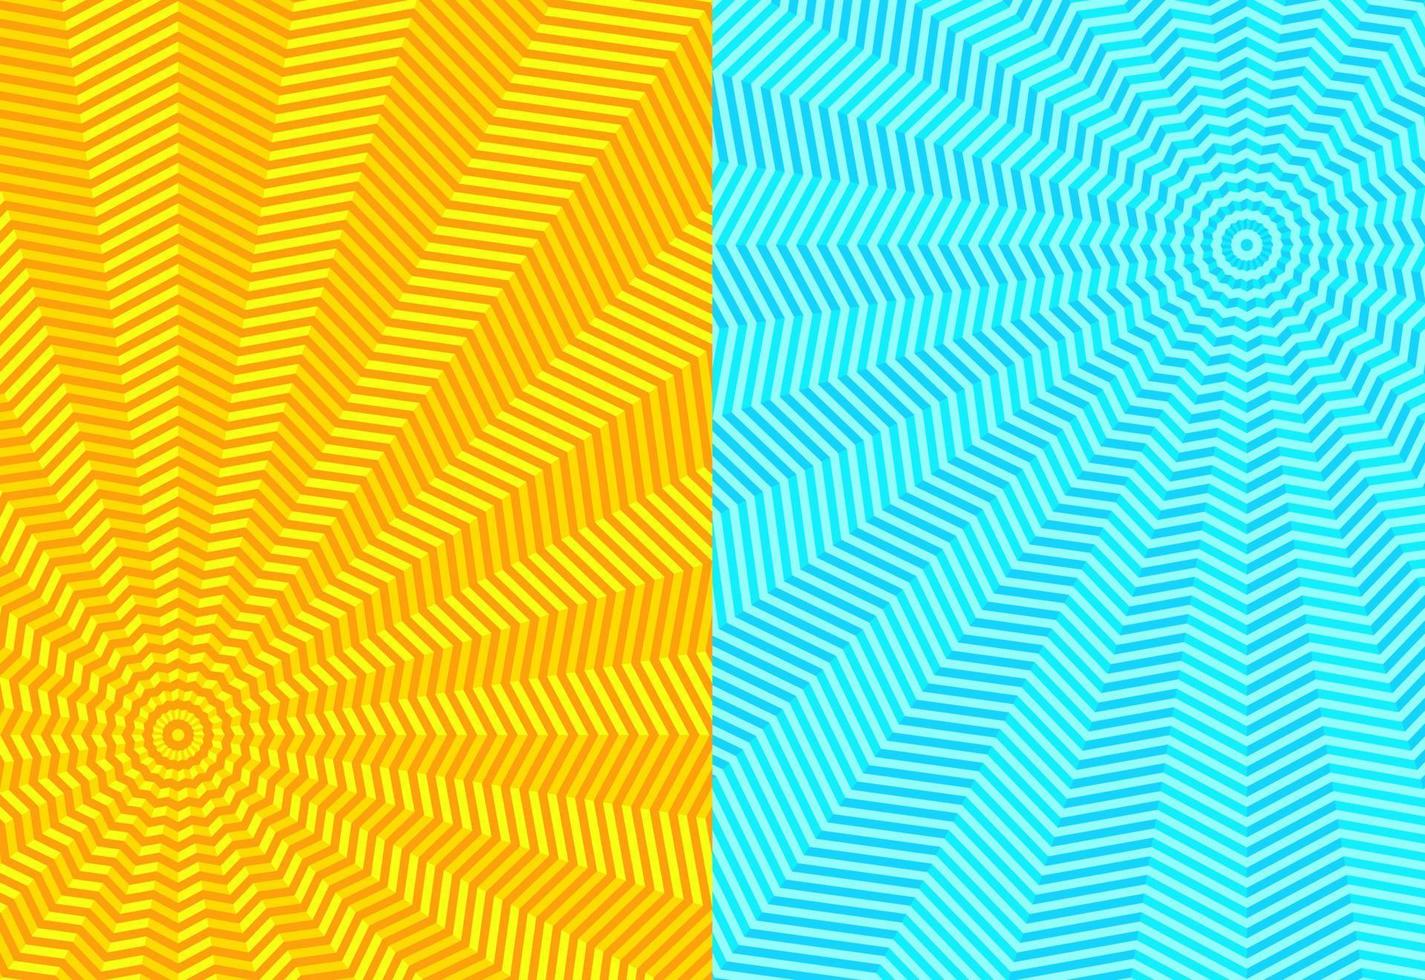 m13 - illusion bleu jaune abstrait vecteur